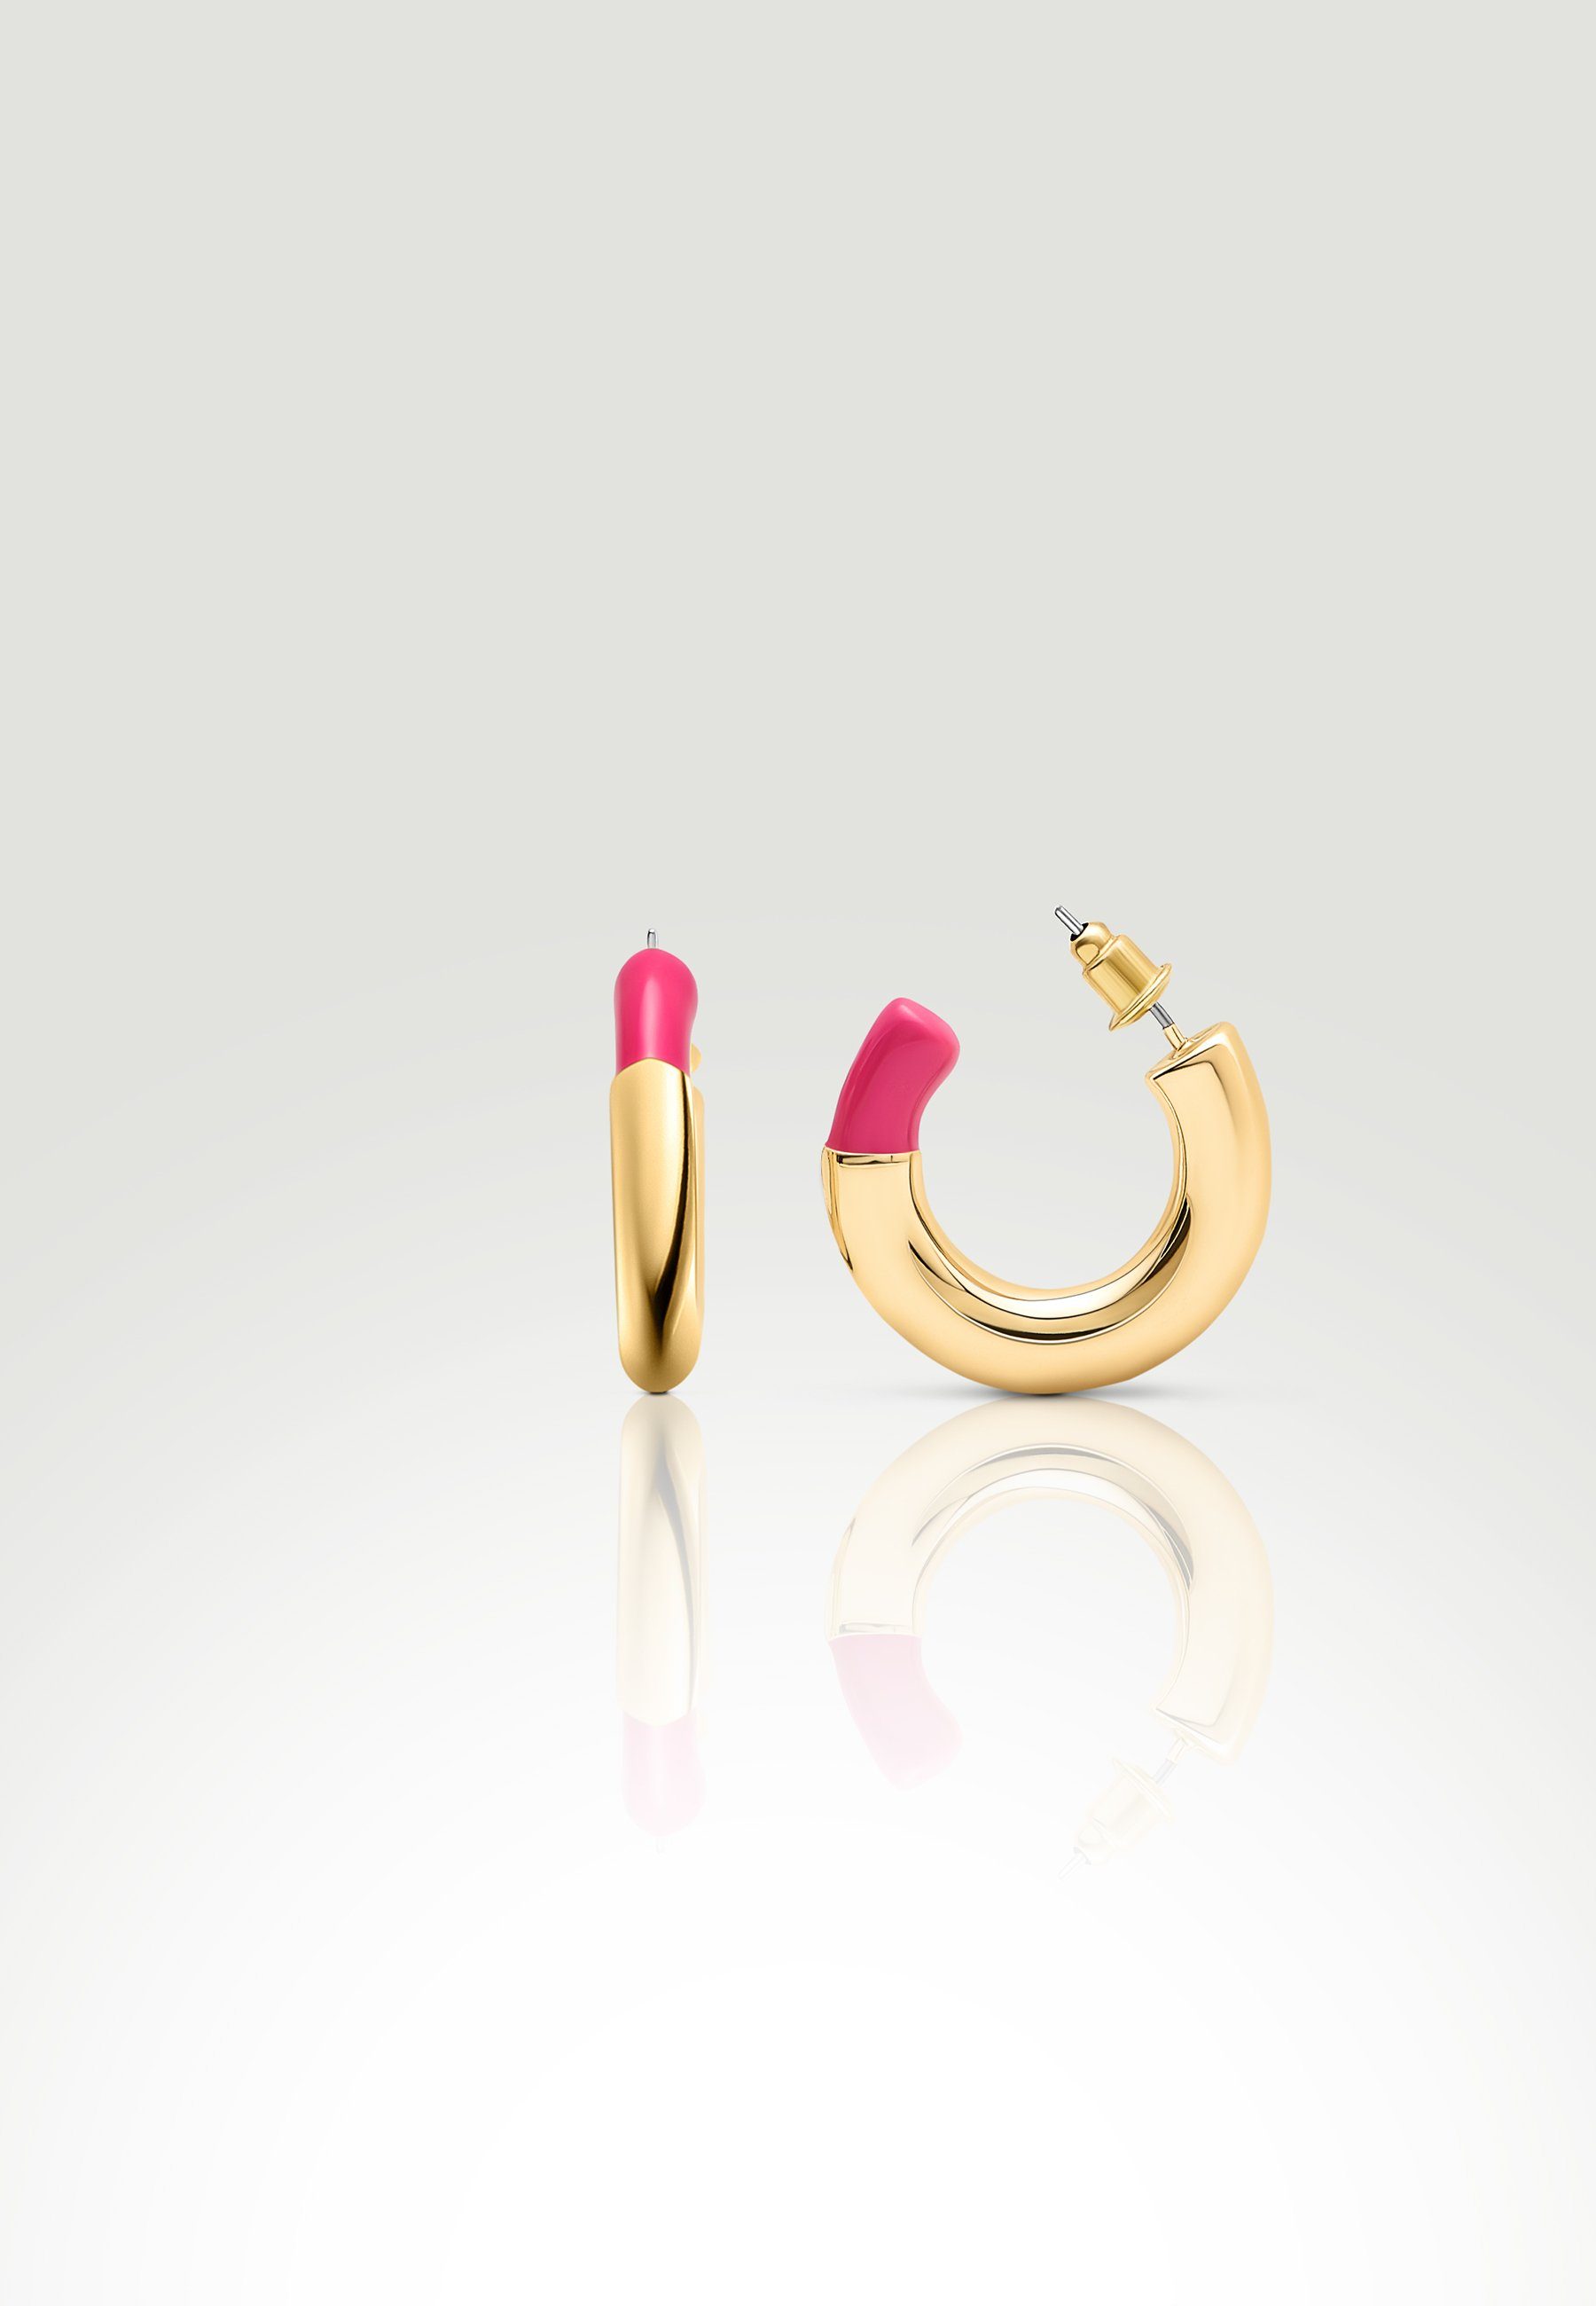 Tokyo Jane Ohrring-Set Camila, klar und minimalistisch Pink